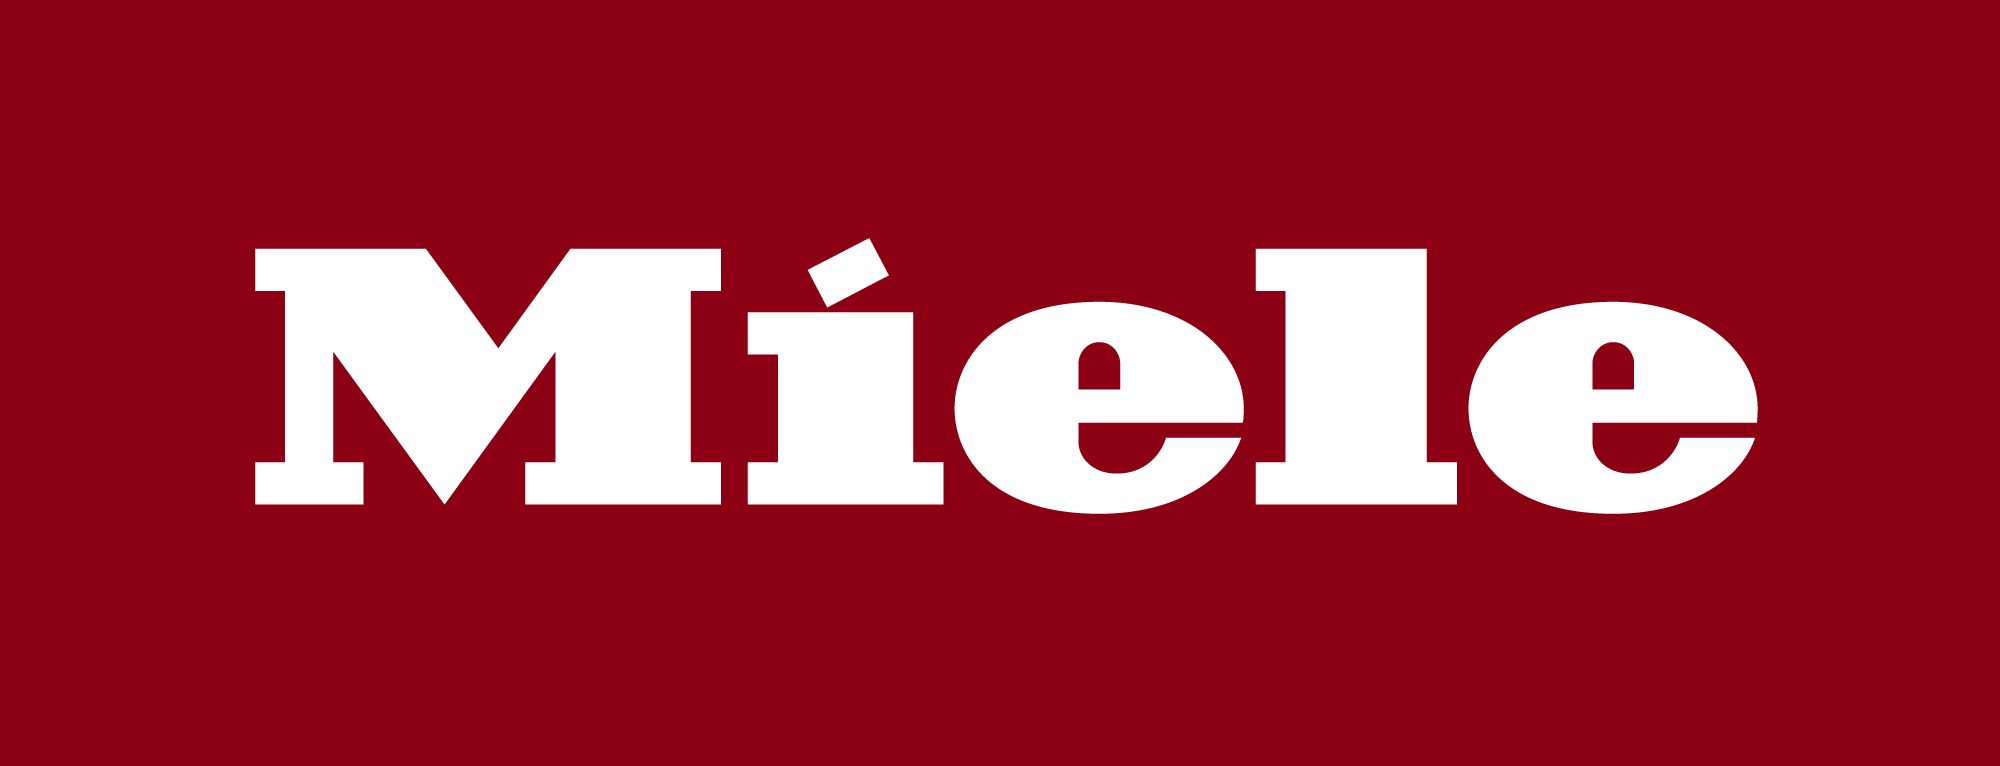 Logotipo de Miele